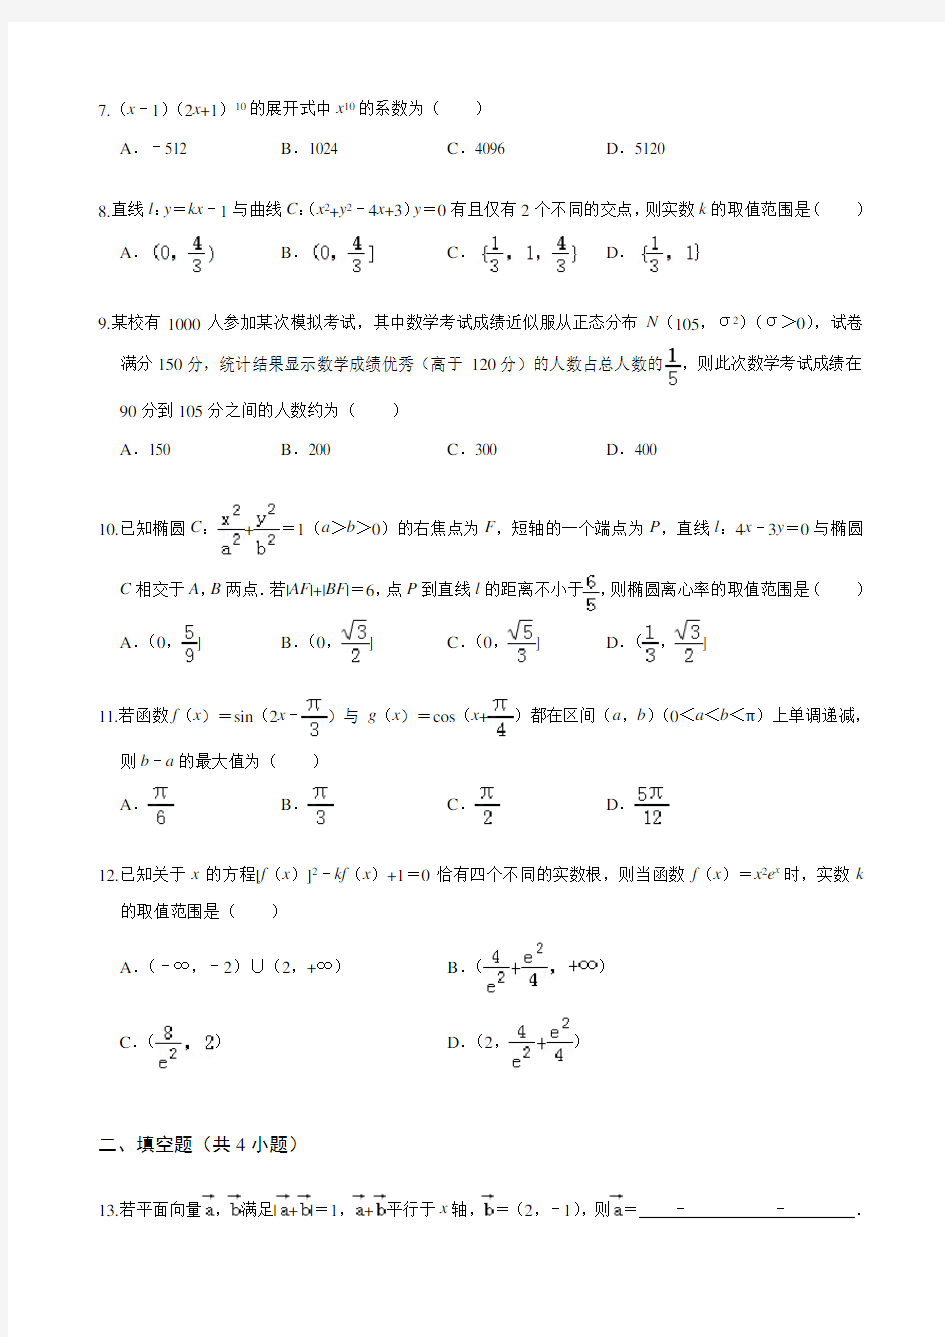 2020年河南省名校联盟高考数学一模试卷(理科)